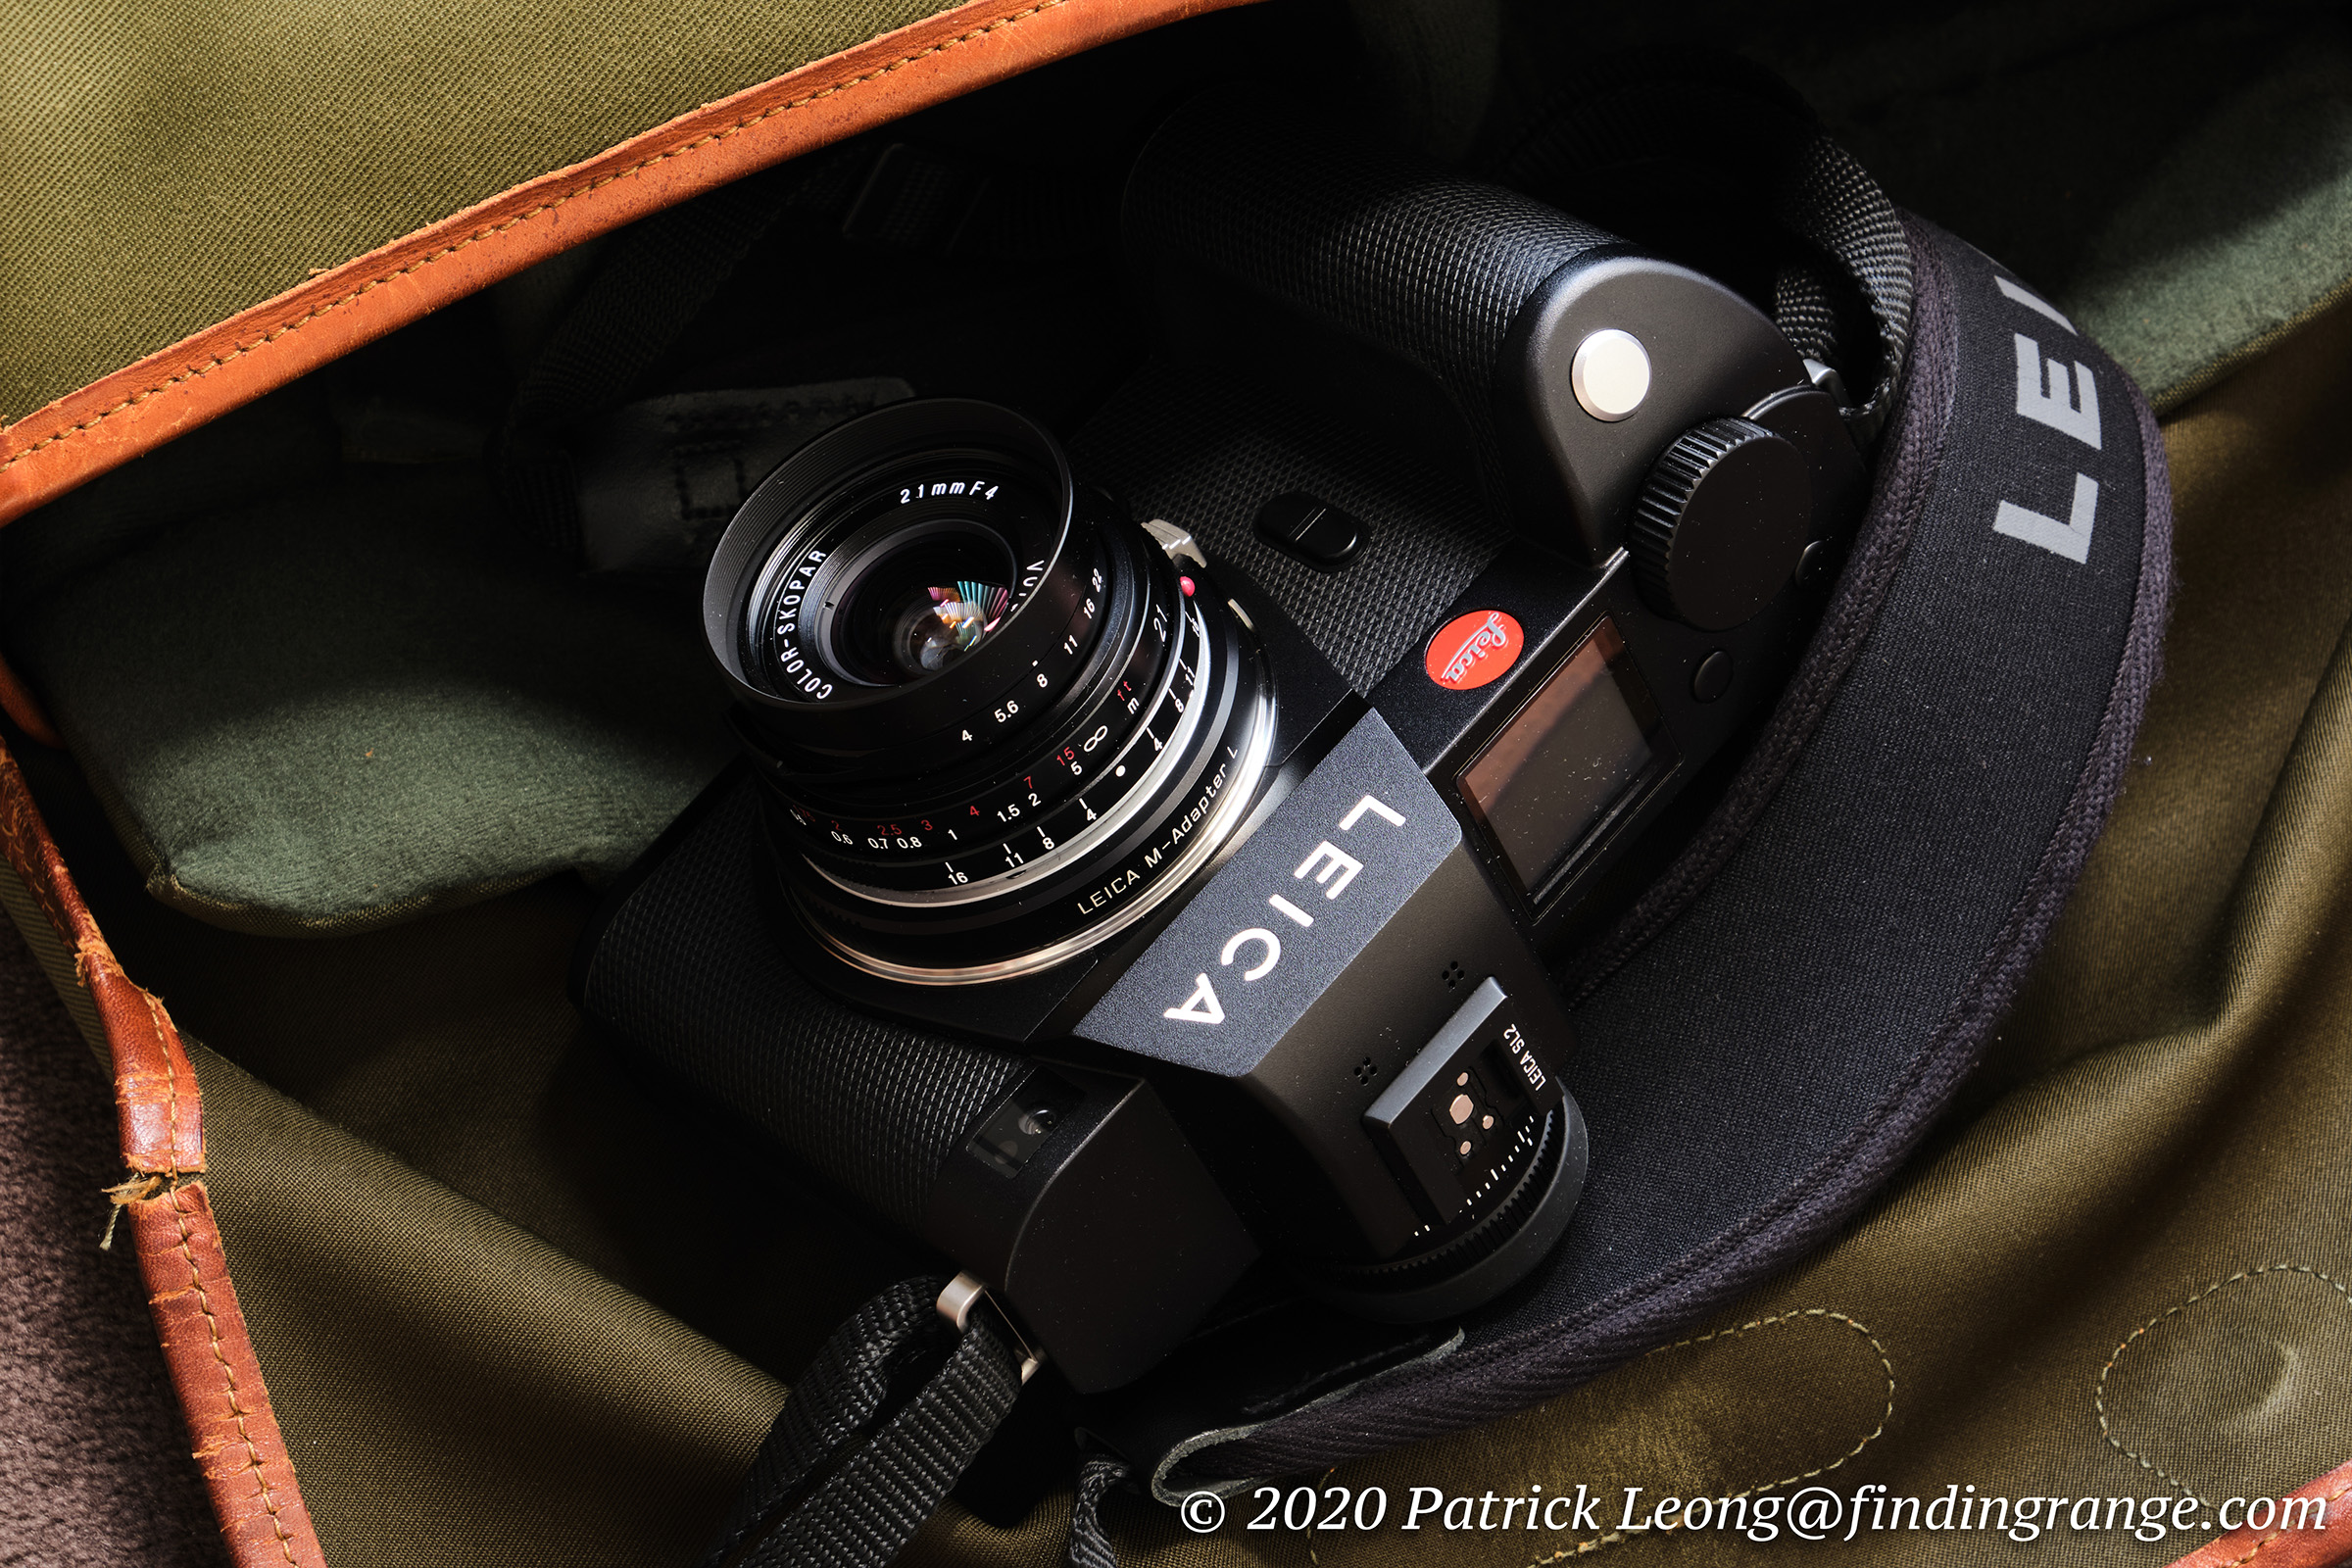 Voigtlander Color-Skopar 21mm f4 P Lens Review